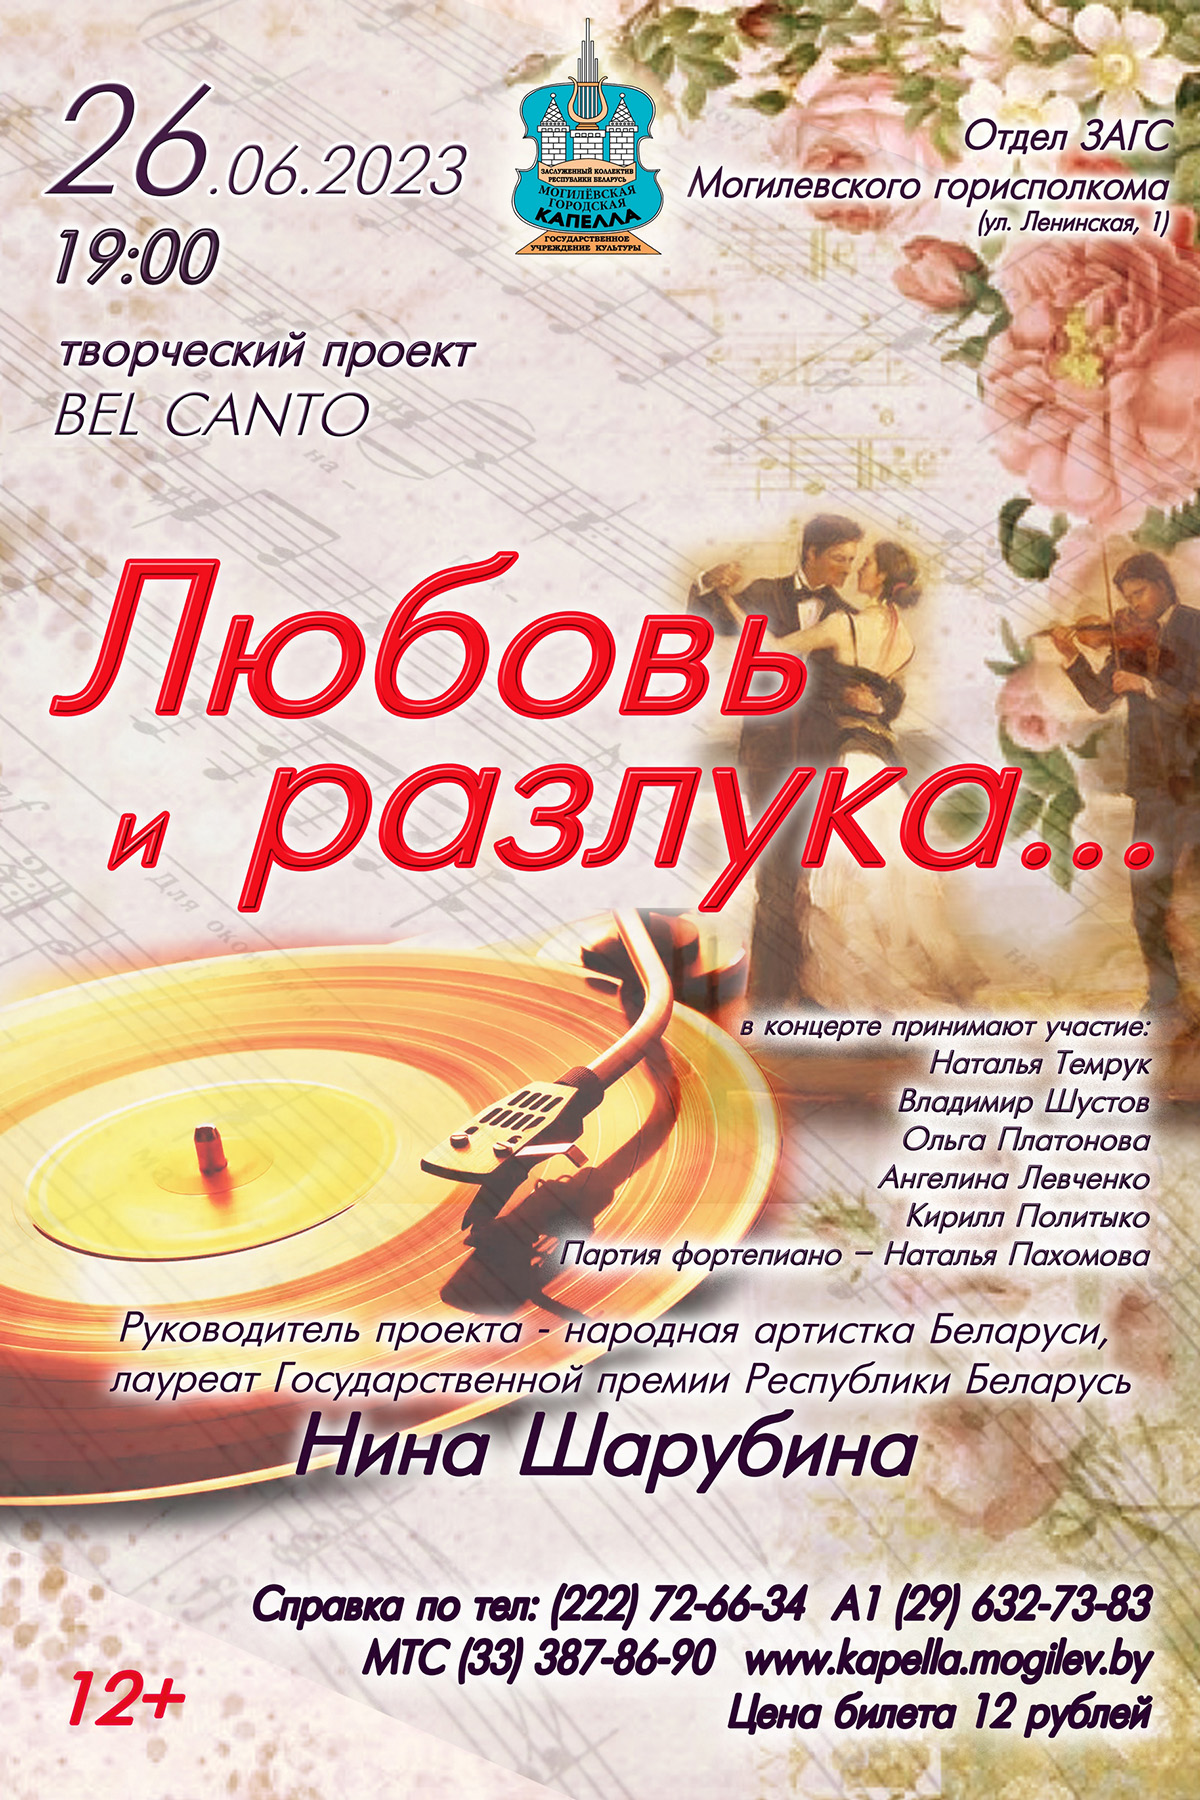 Концертную программу «Любовь и разлука...» представят в Могилеве 26 июня